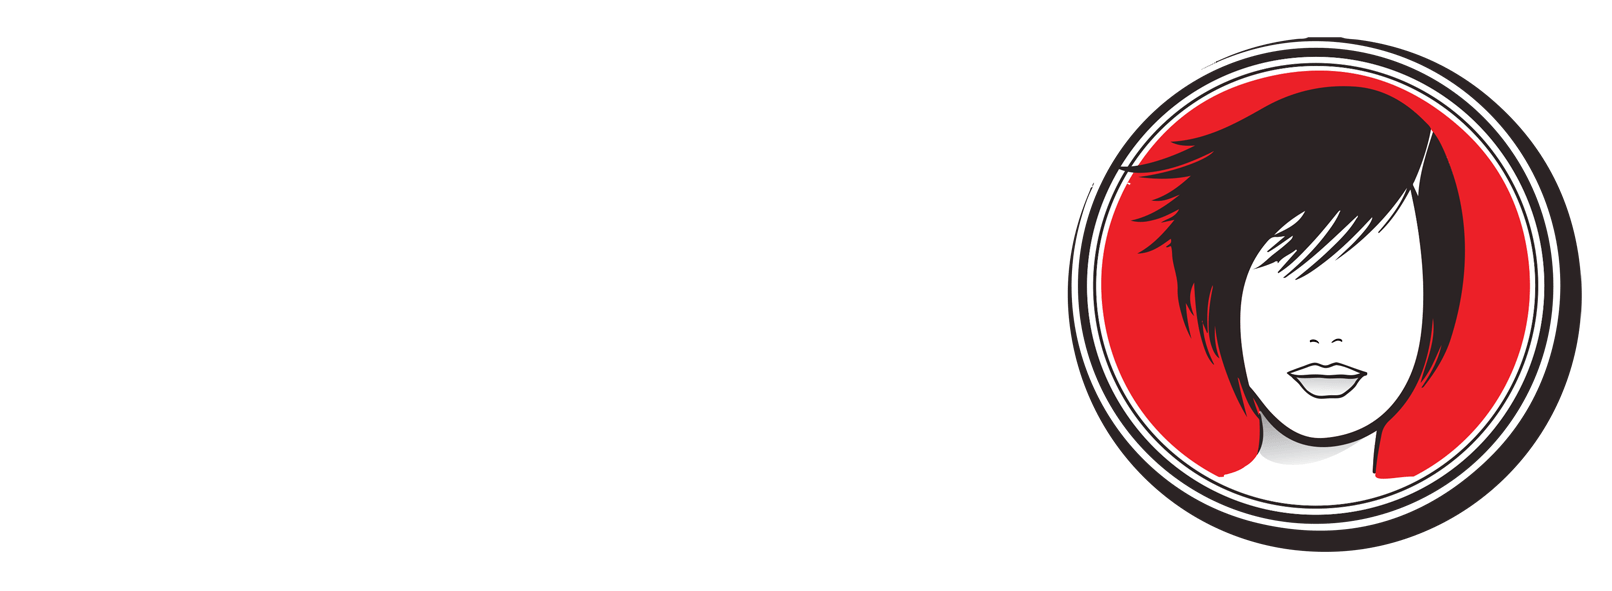 Mels Hair Salon